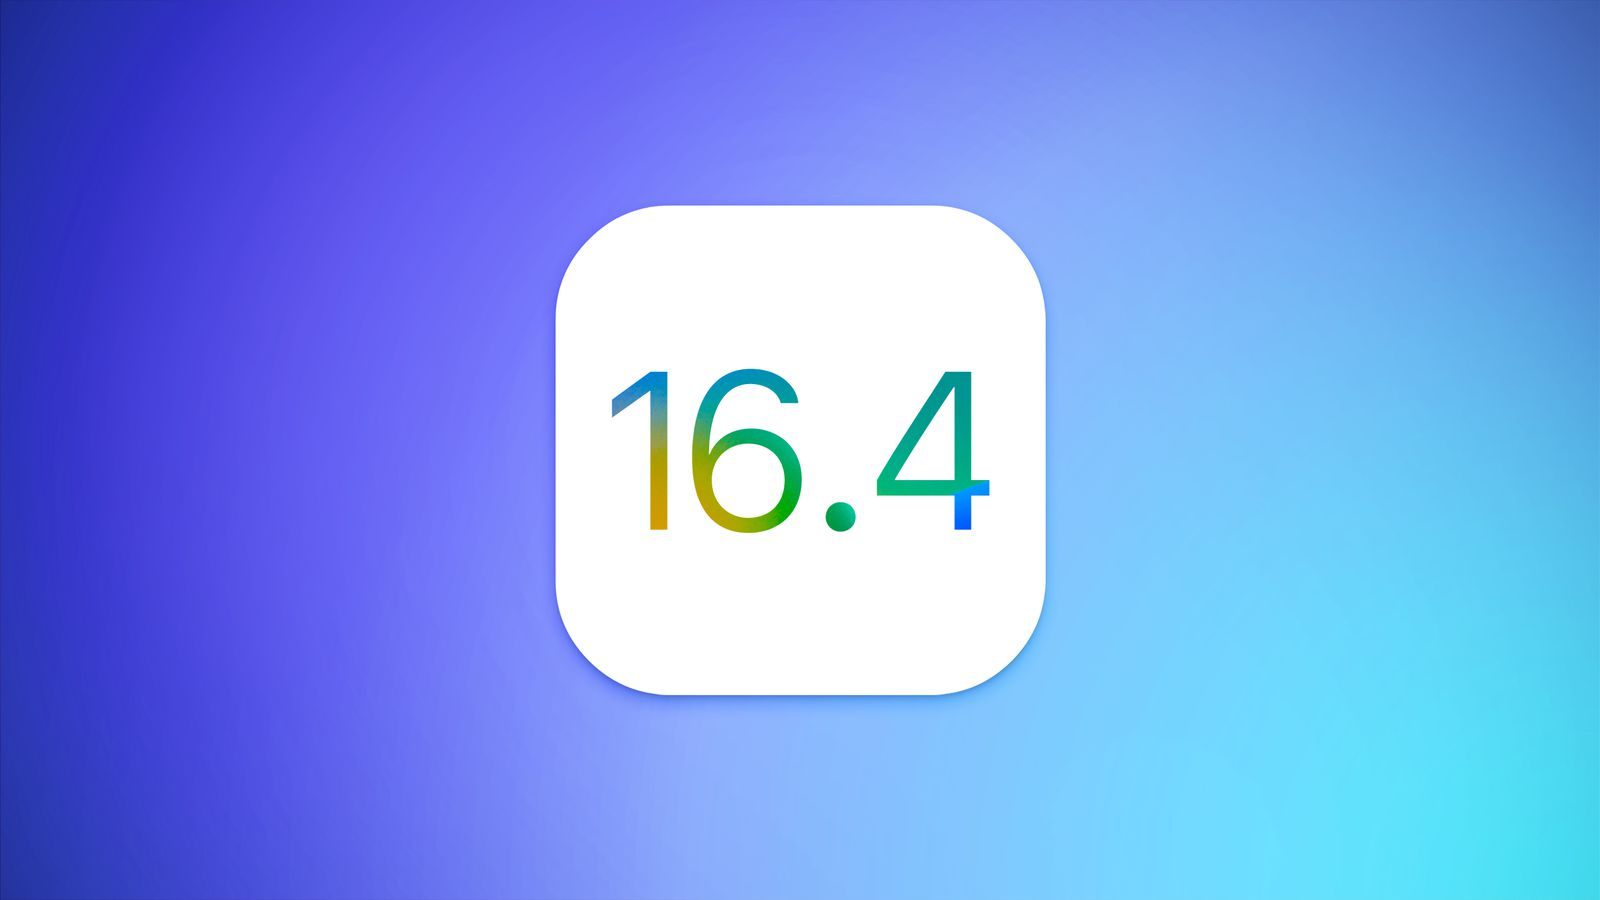 Πότε θα κυκλοφορήσει η Apple το iOS 16.4;